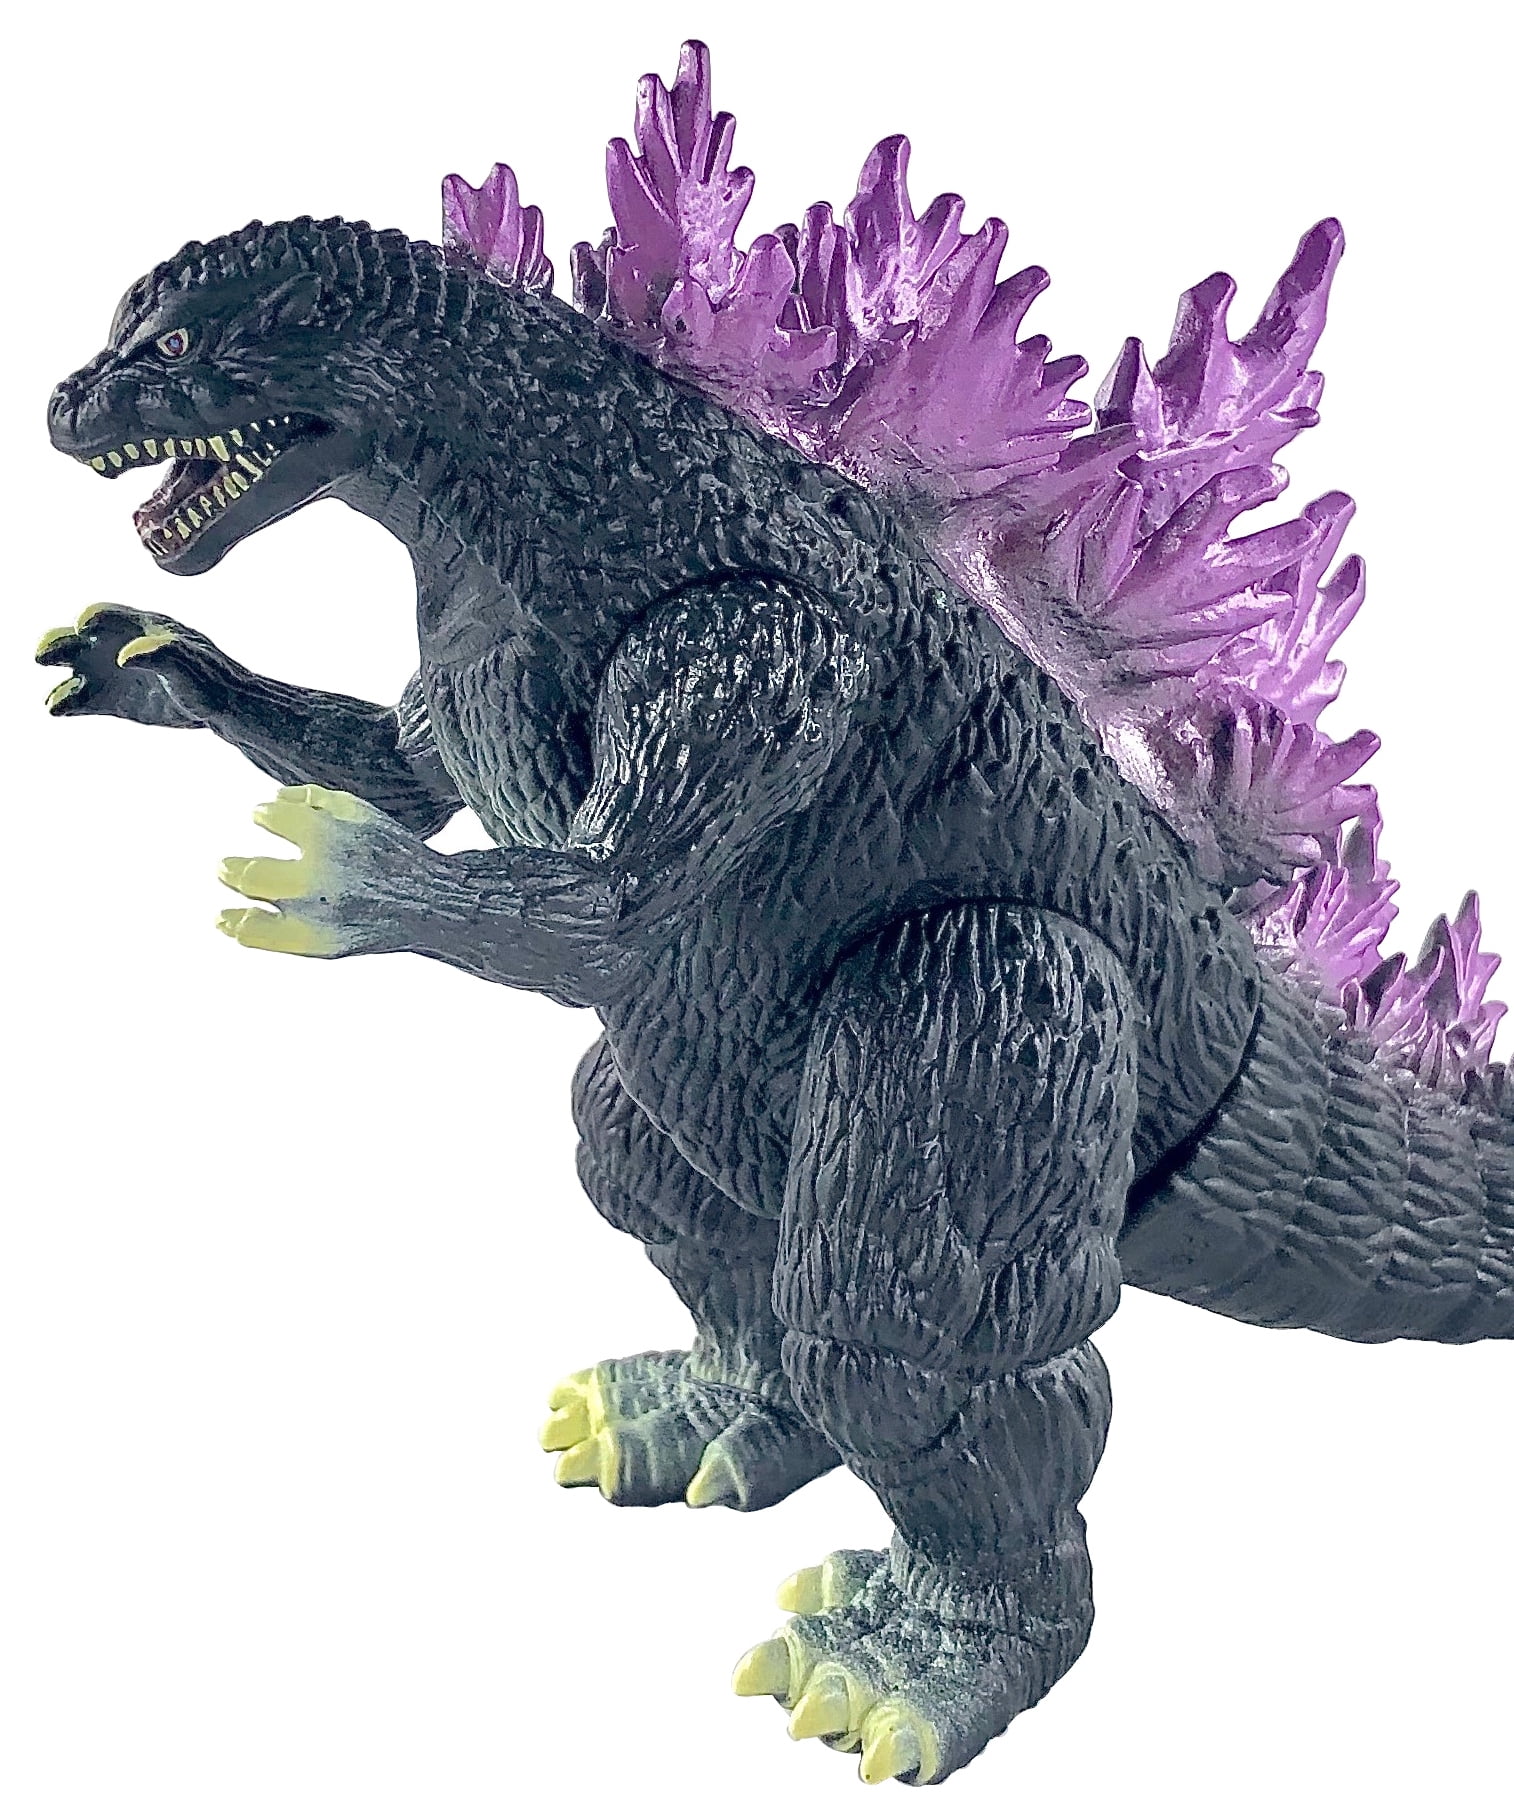 Figure 2021 XL ⚡✈️ SHIPS SAME DAY  Godzilla vs Kong 11" Giant Godzilla